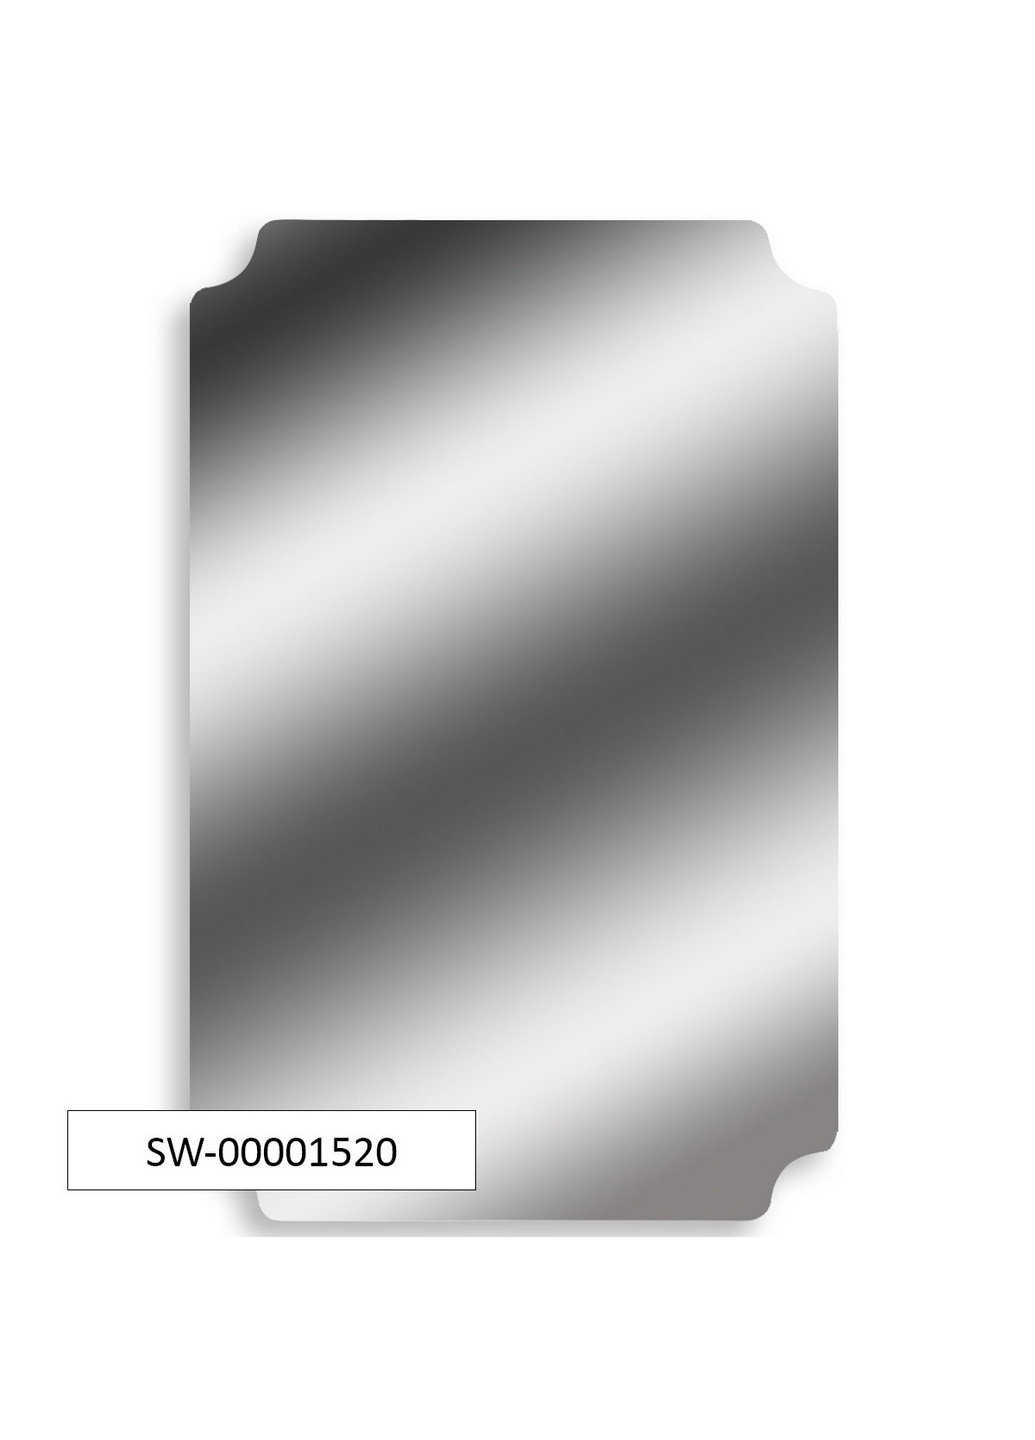 Зеркальная акриловая наклейка 42х27х0,2 см Sticker Wall (266625555)